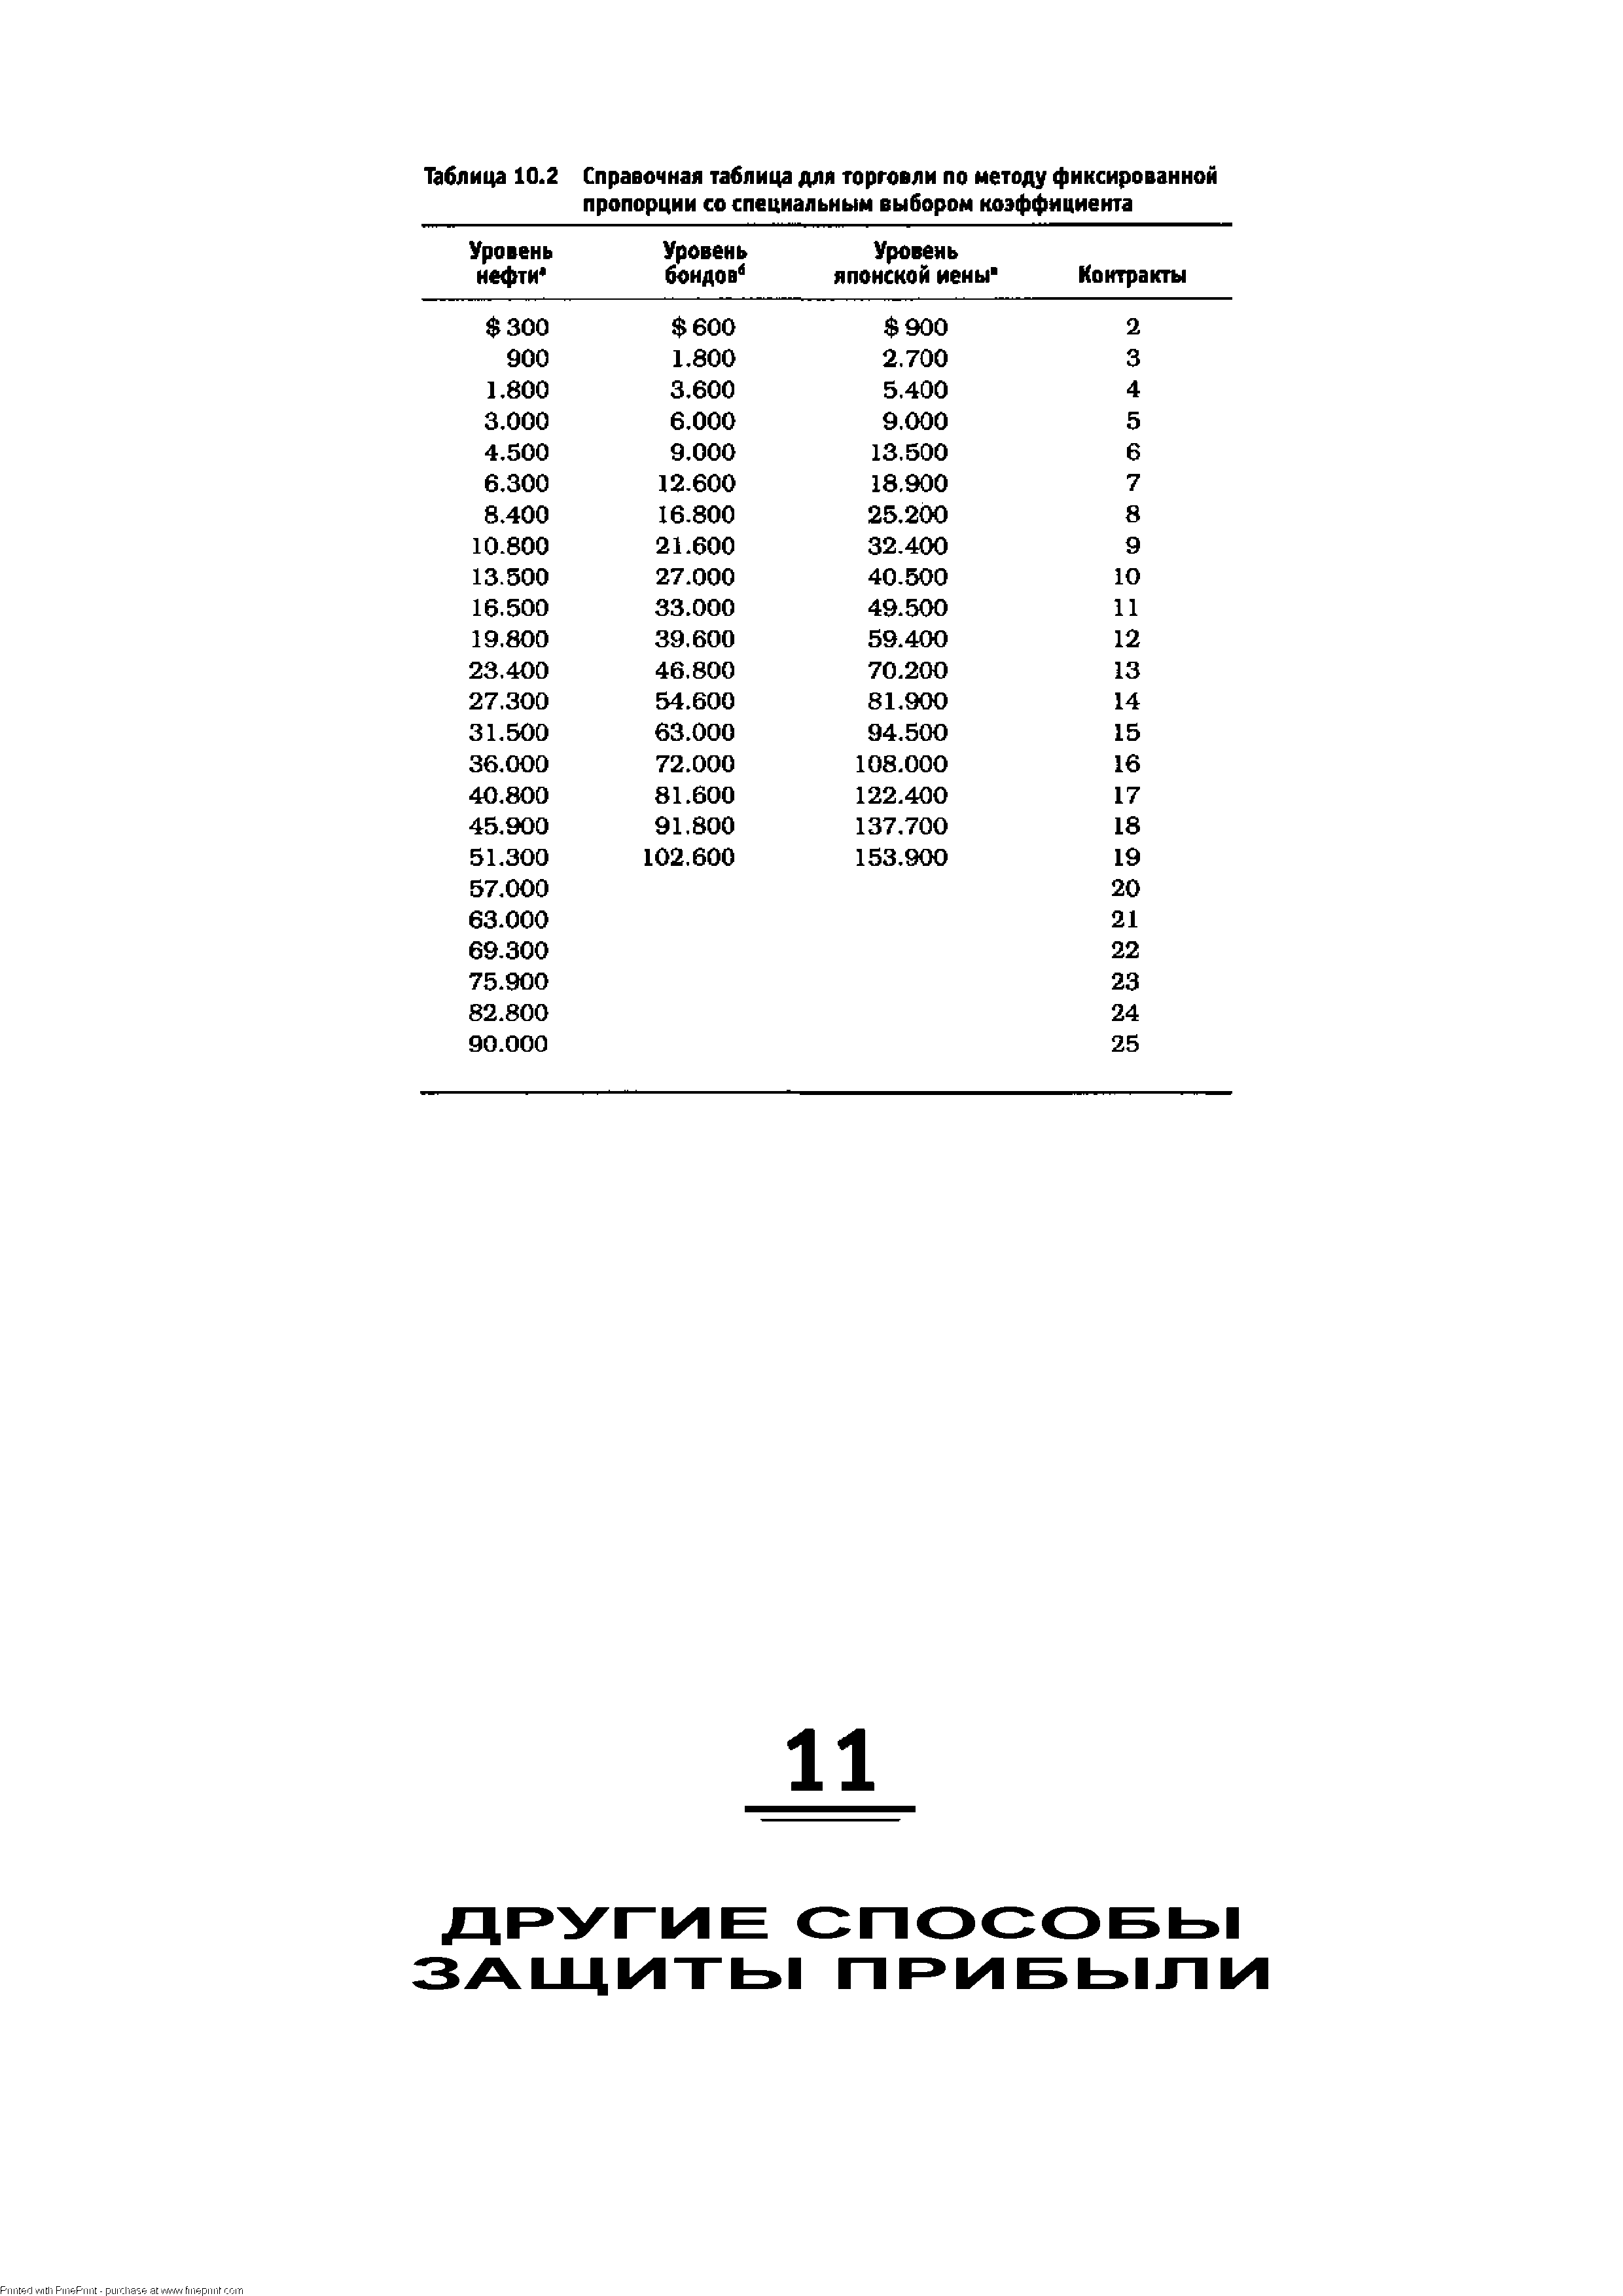 Таблица 10.2 Справочная таблица для торговли по методу фиксированной пропорции со специальным выбором коэффициента
